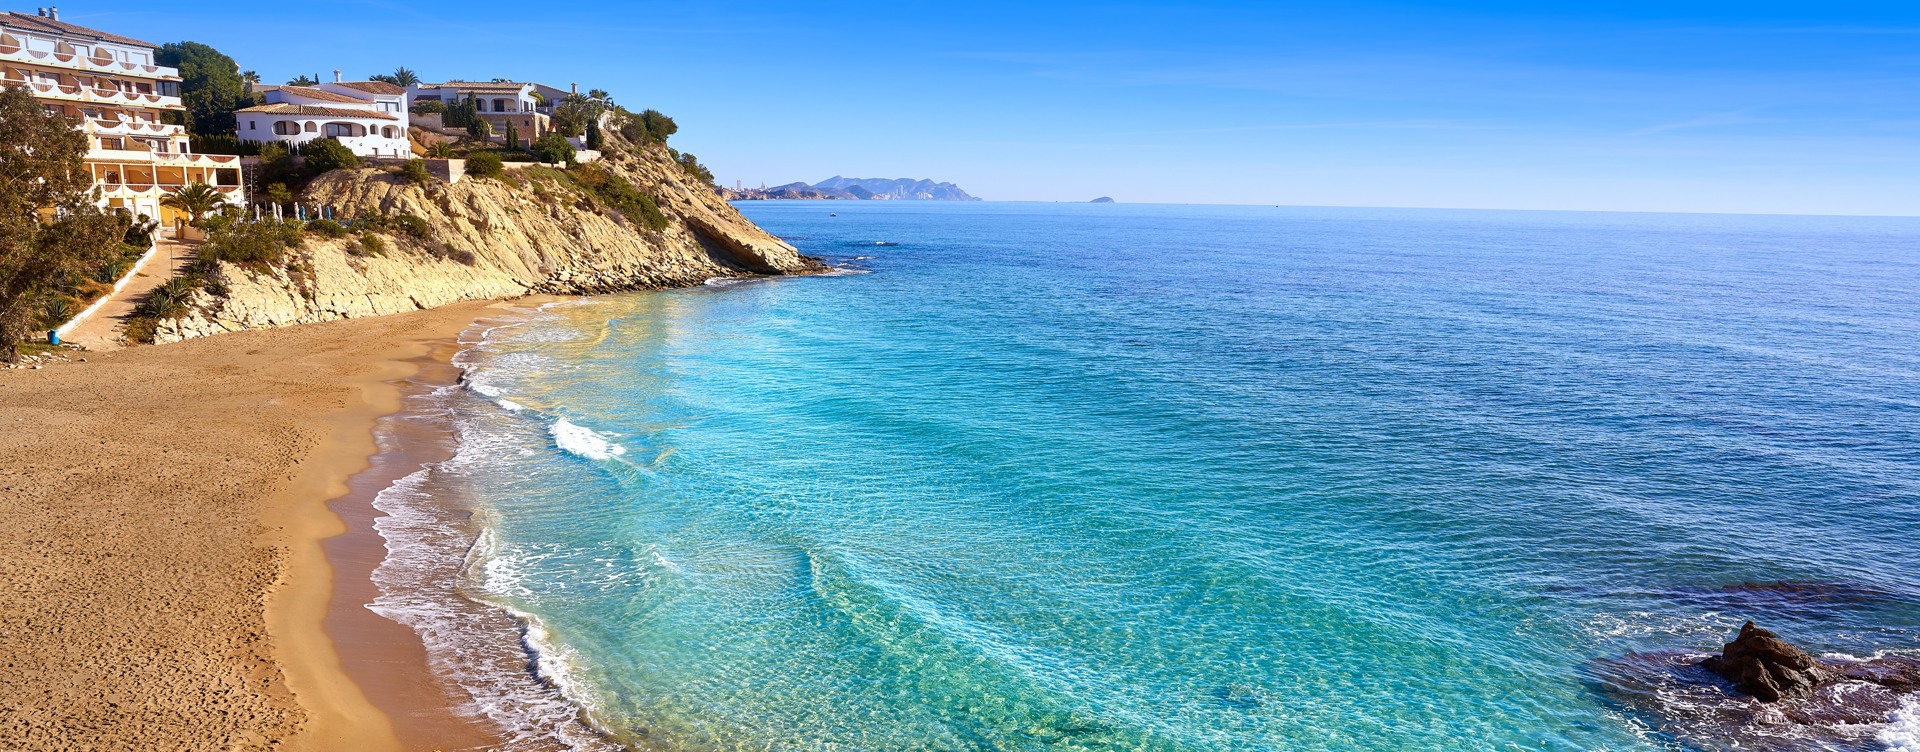 Start het jaar goed met een heerlijke vakantie
in het voorjaar aan de Spaanse kust